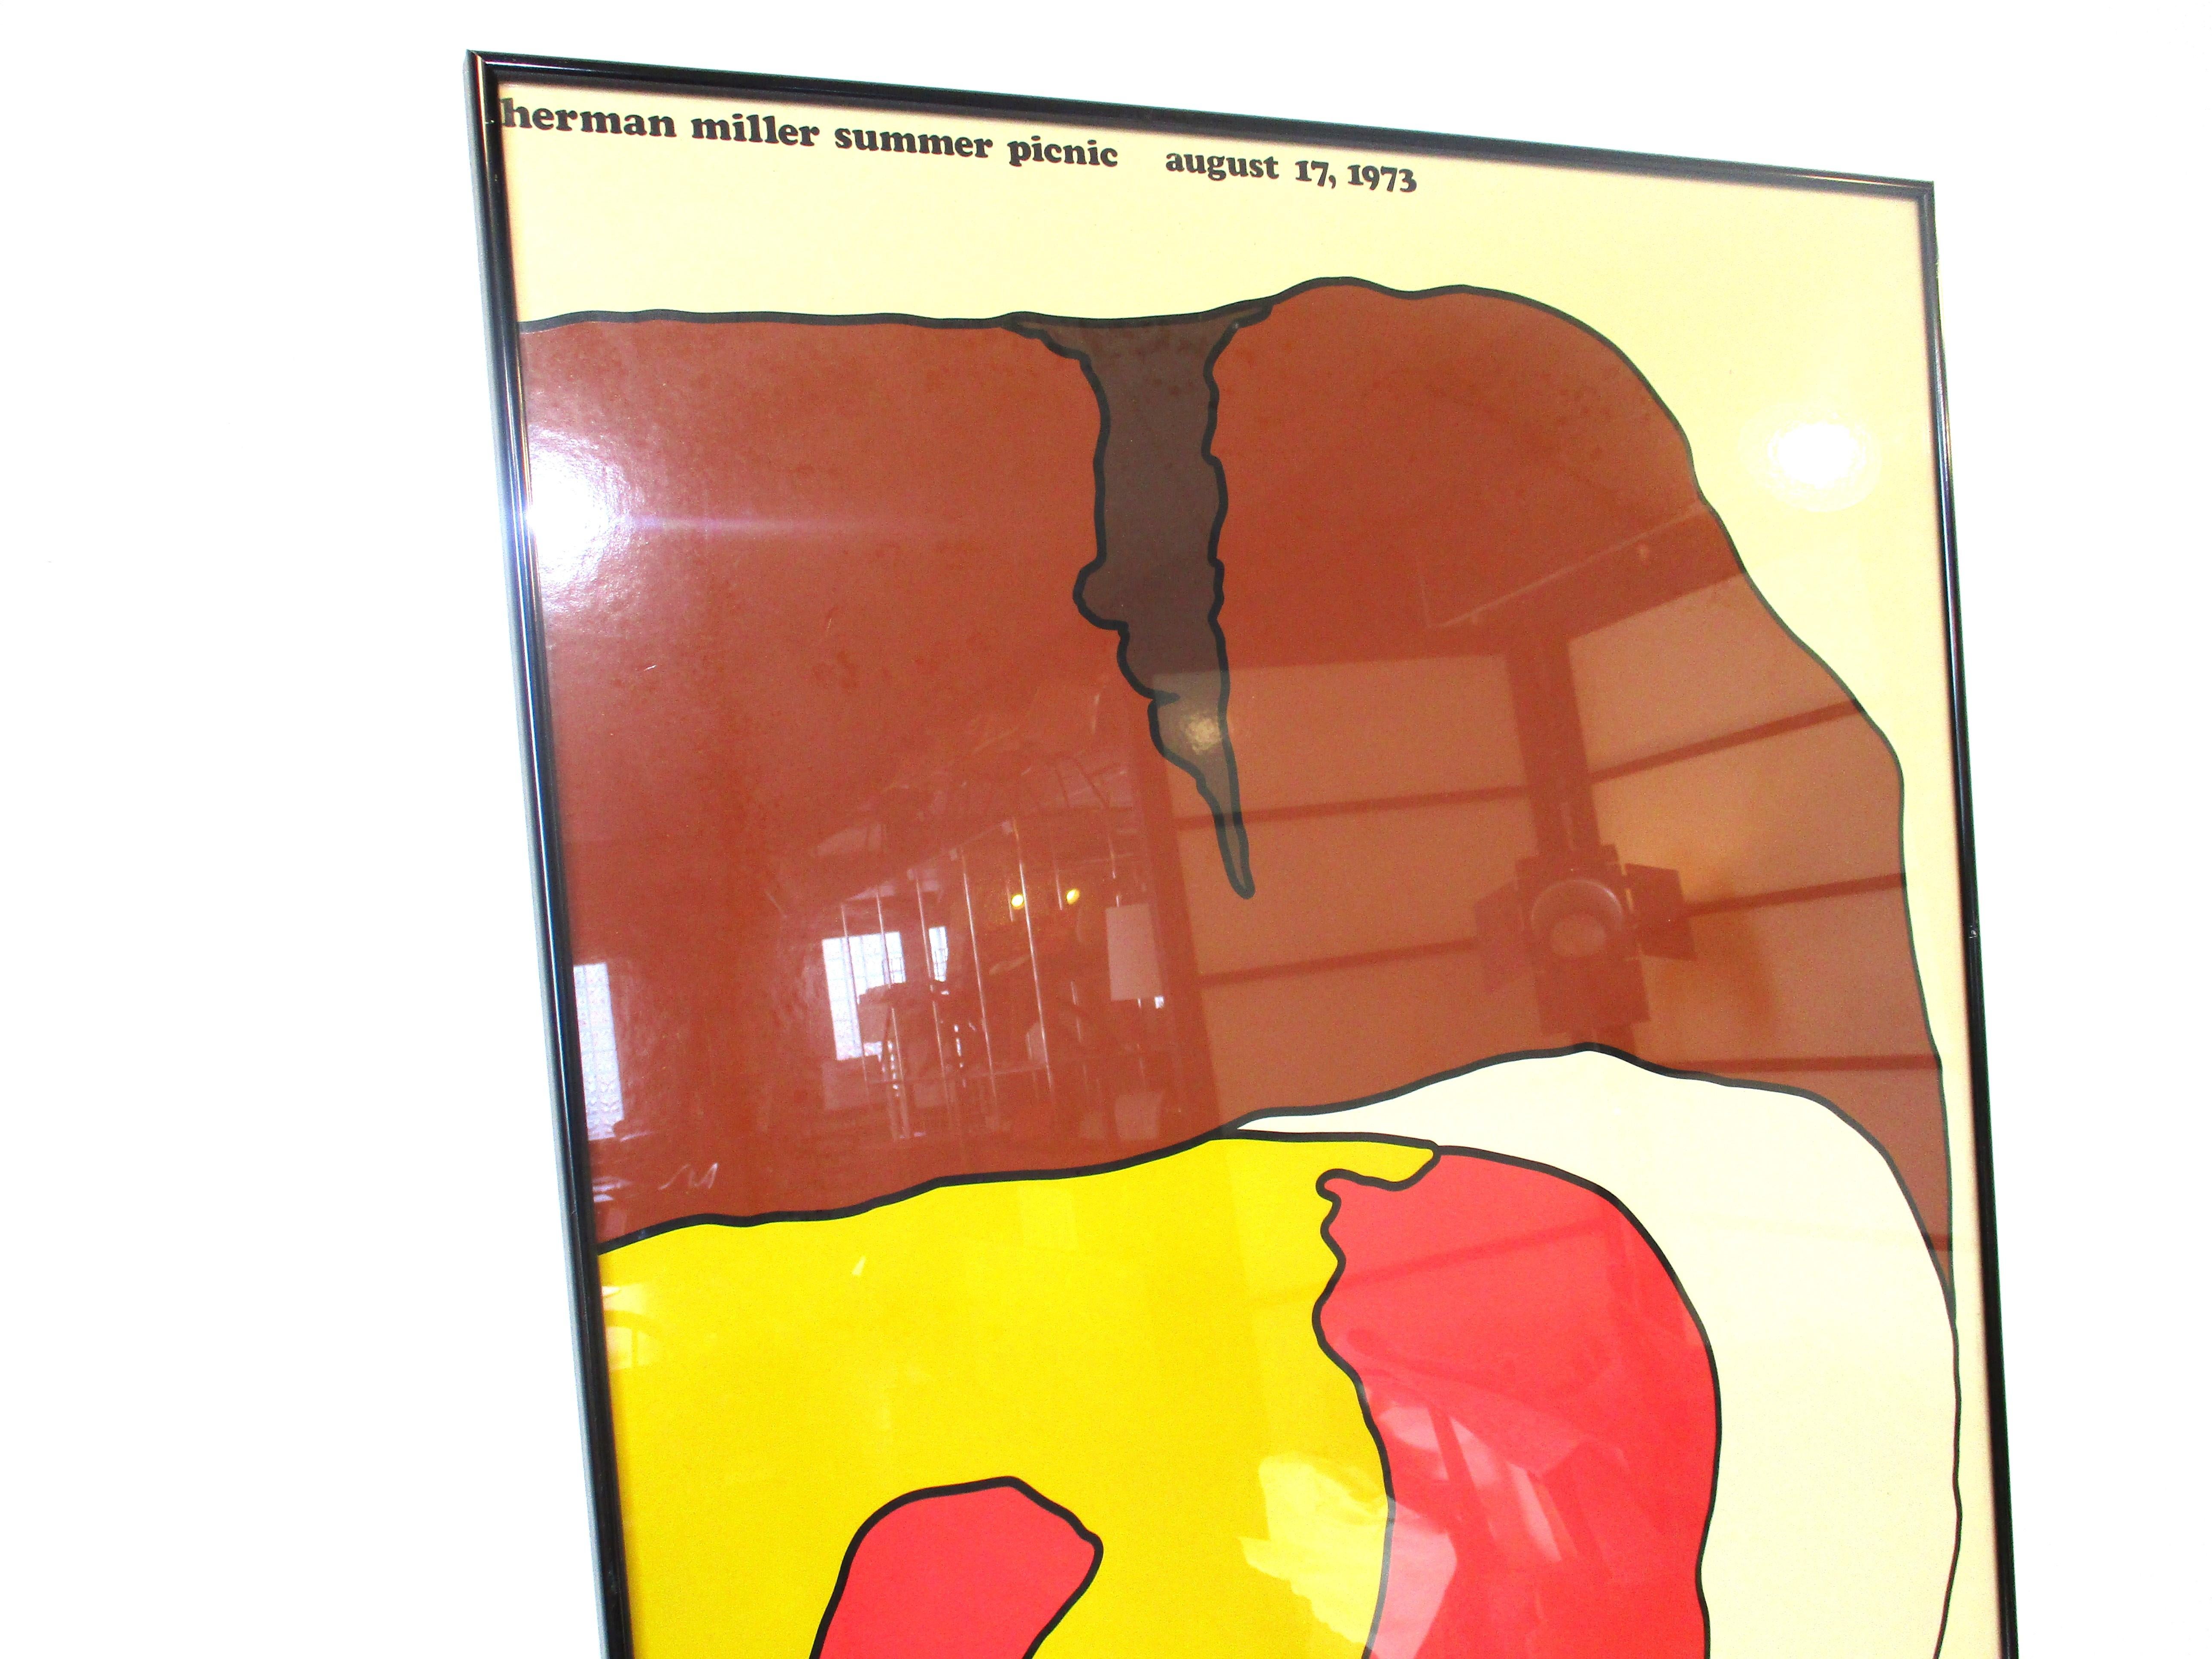 Un poster coloré de style pop art très collector du pique-nique annuel d'été de Herman Miller. Imprimé sur un papier glacé représentant un hamburger avec toutes les garnitures, protégé par un cadre métallique noir, il s'agit de l'événement du 17